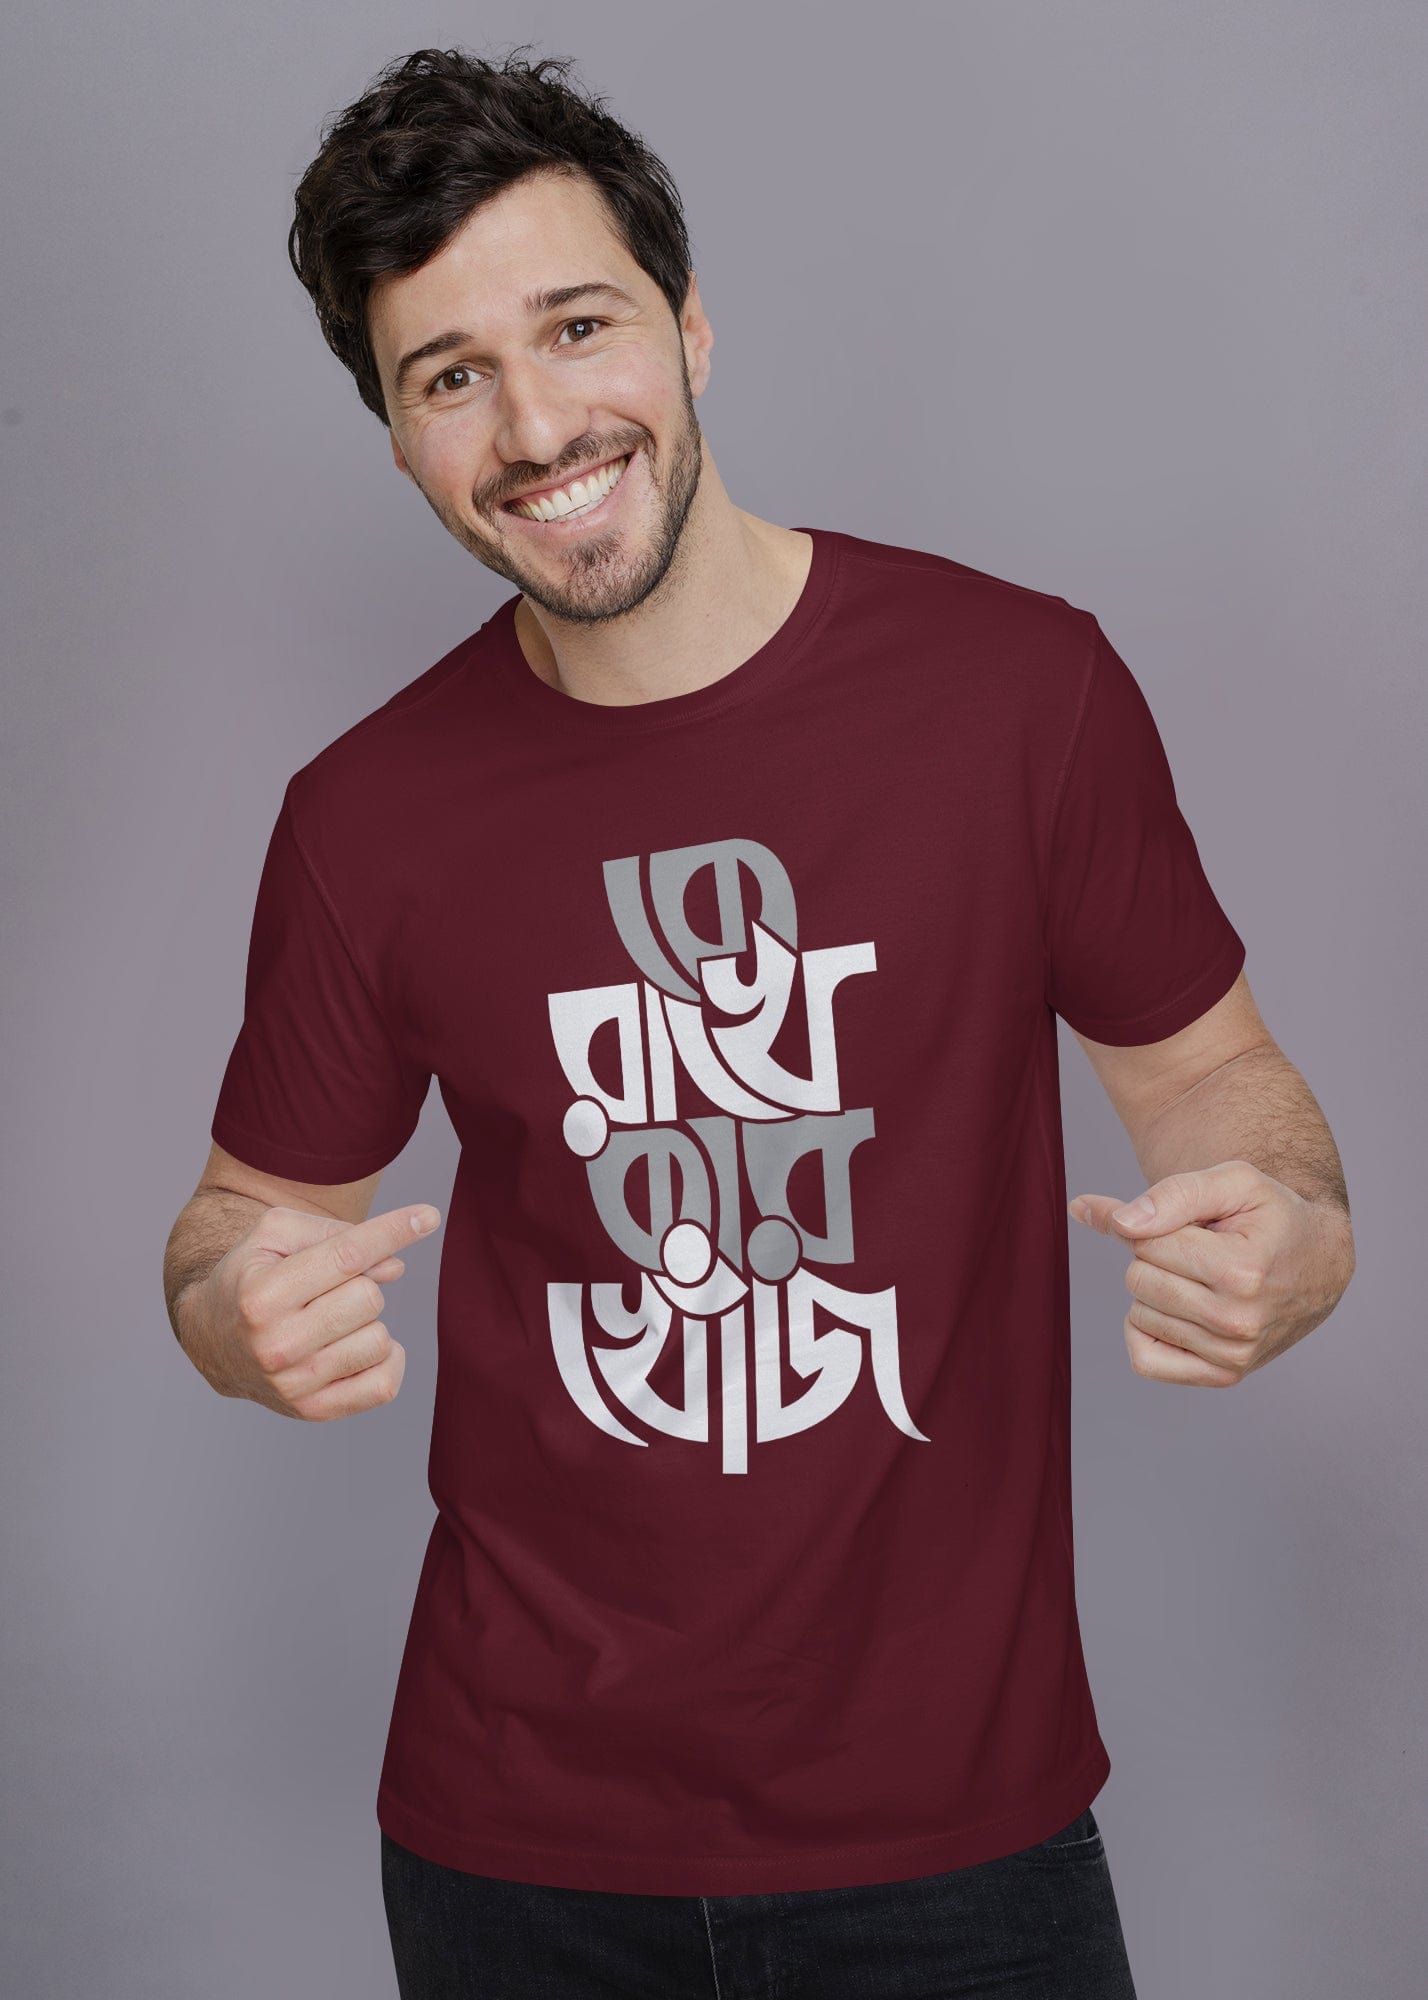 Ke Rakhe Kar Khoj Printed Half Sleeve Premium Cotton T-shirt For Men